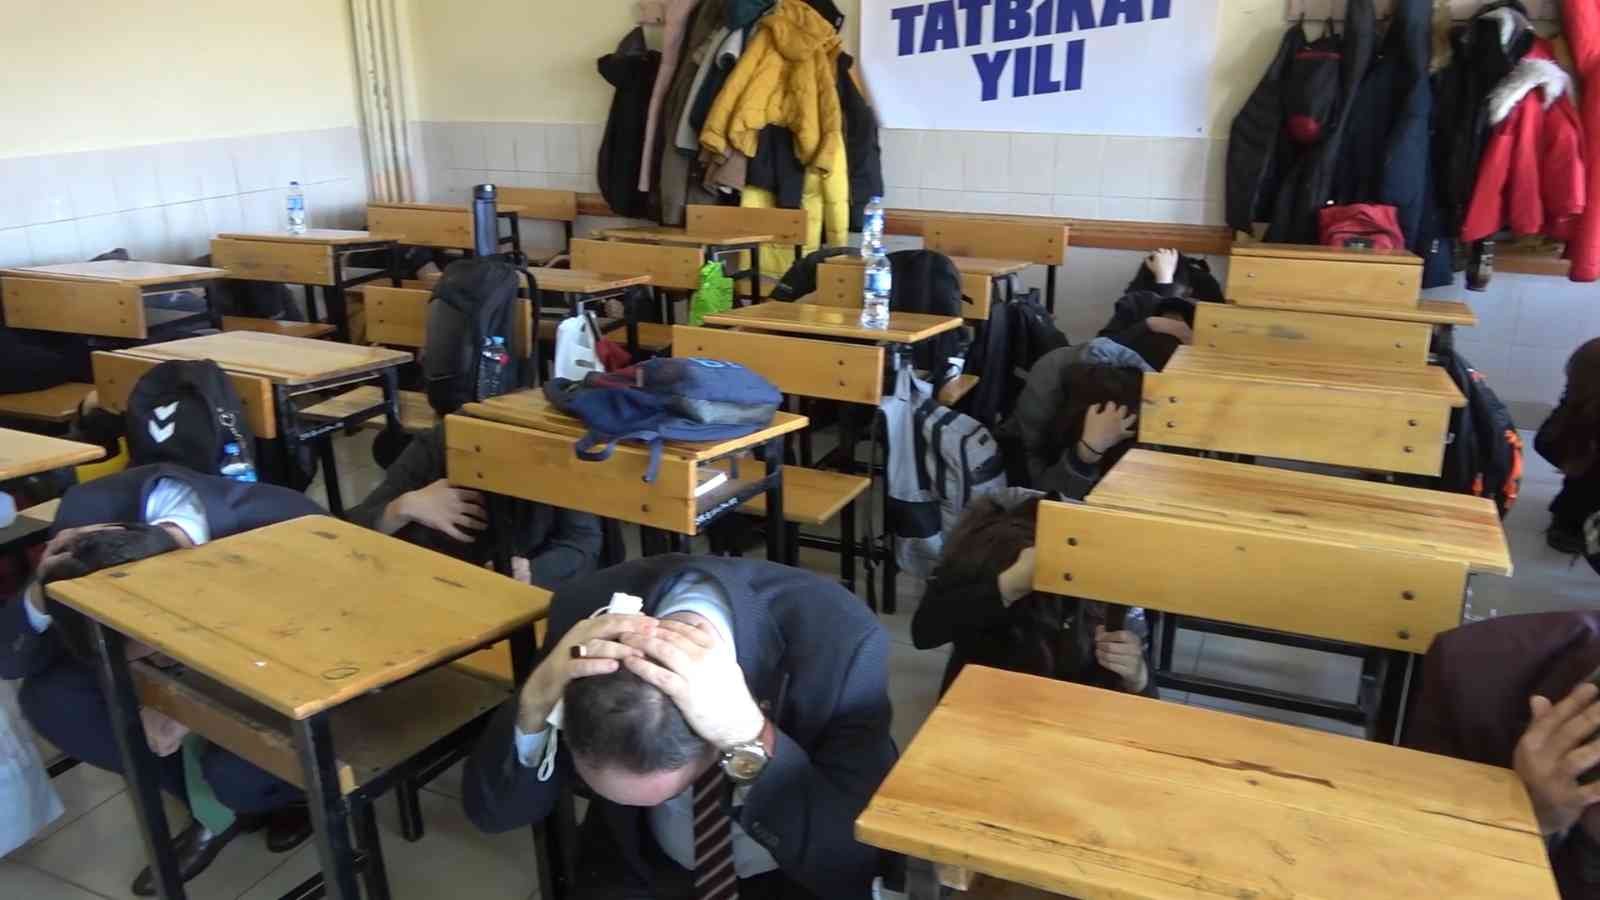 Kırıkkale’deki okullarda eş zamanlı deprem tatbikatı #kirikkale